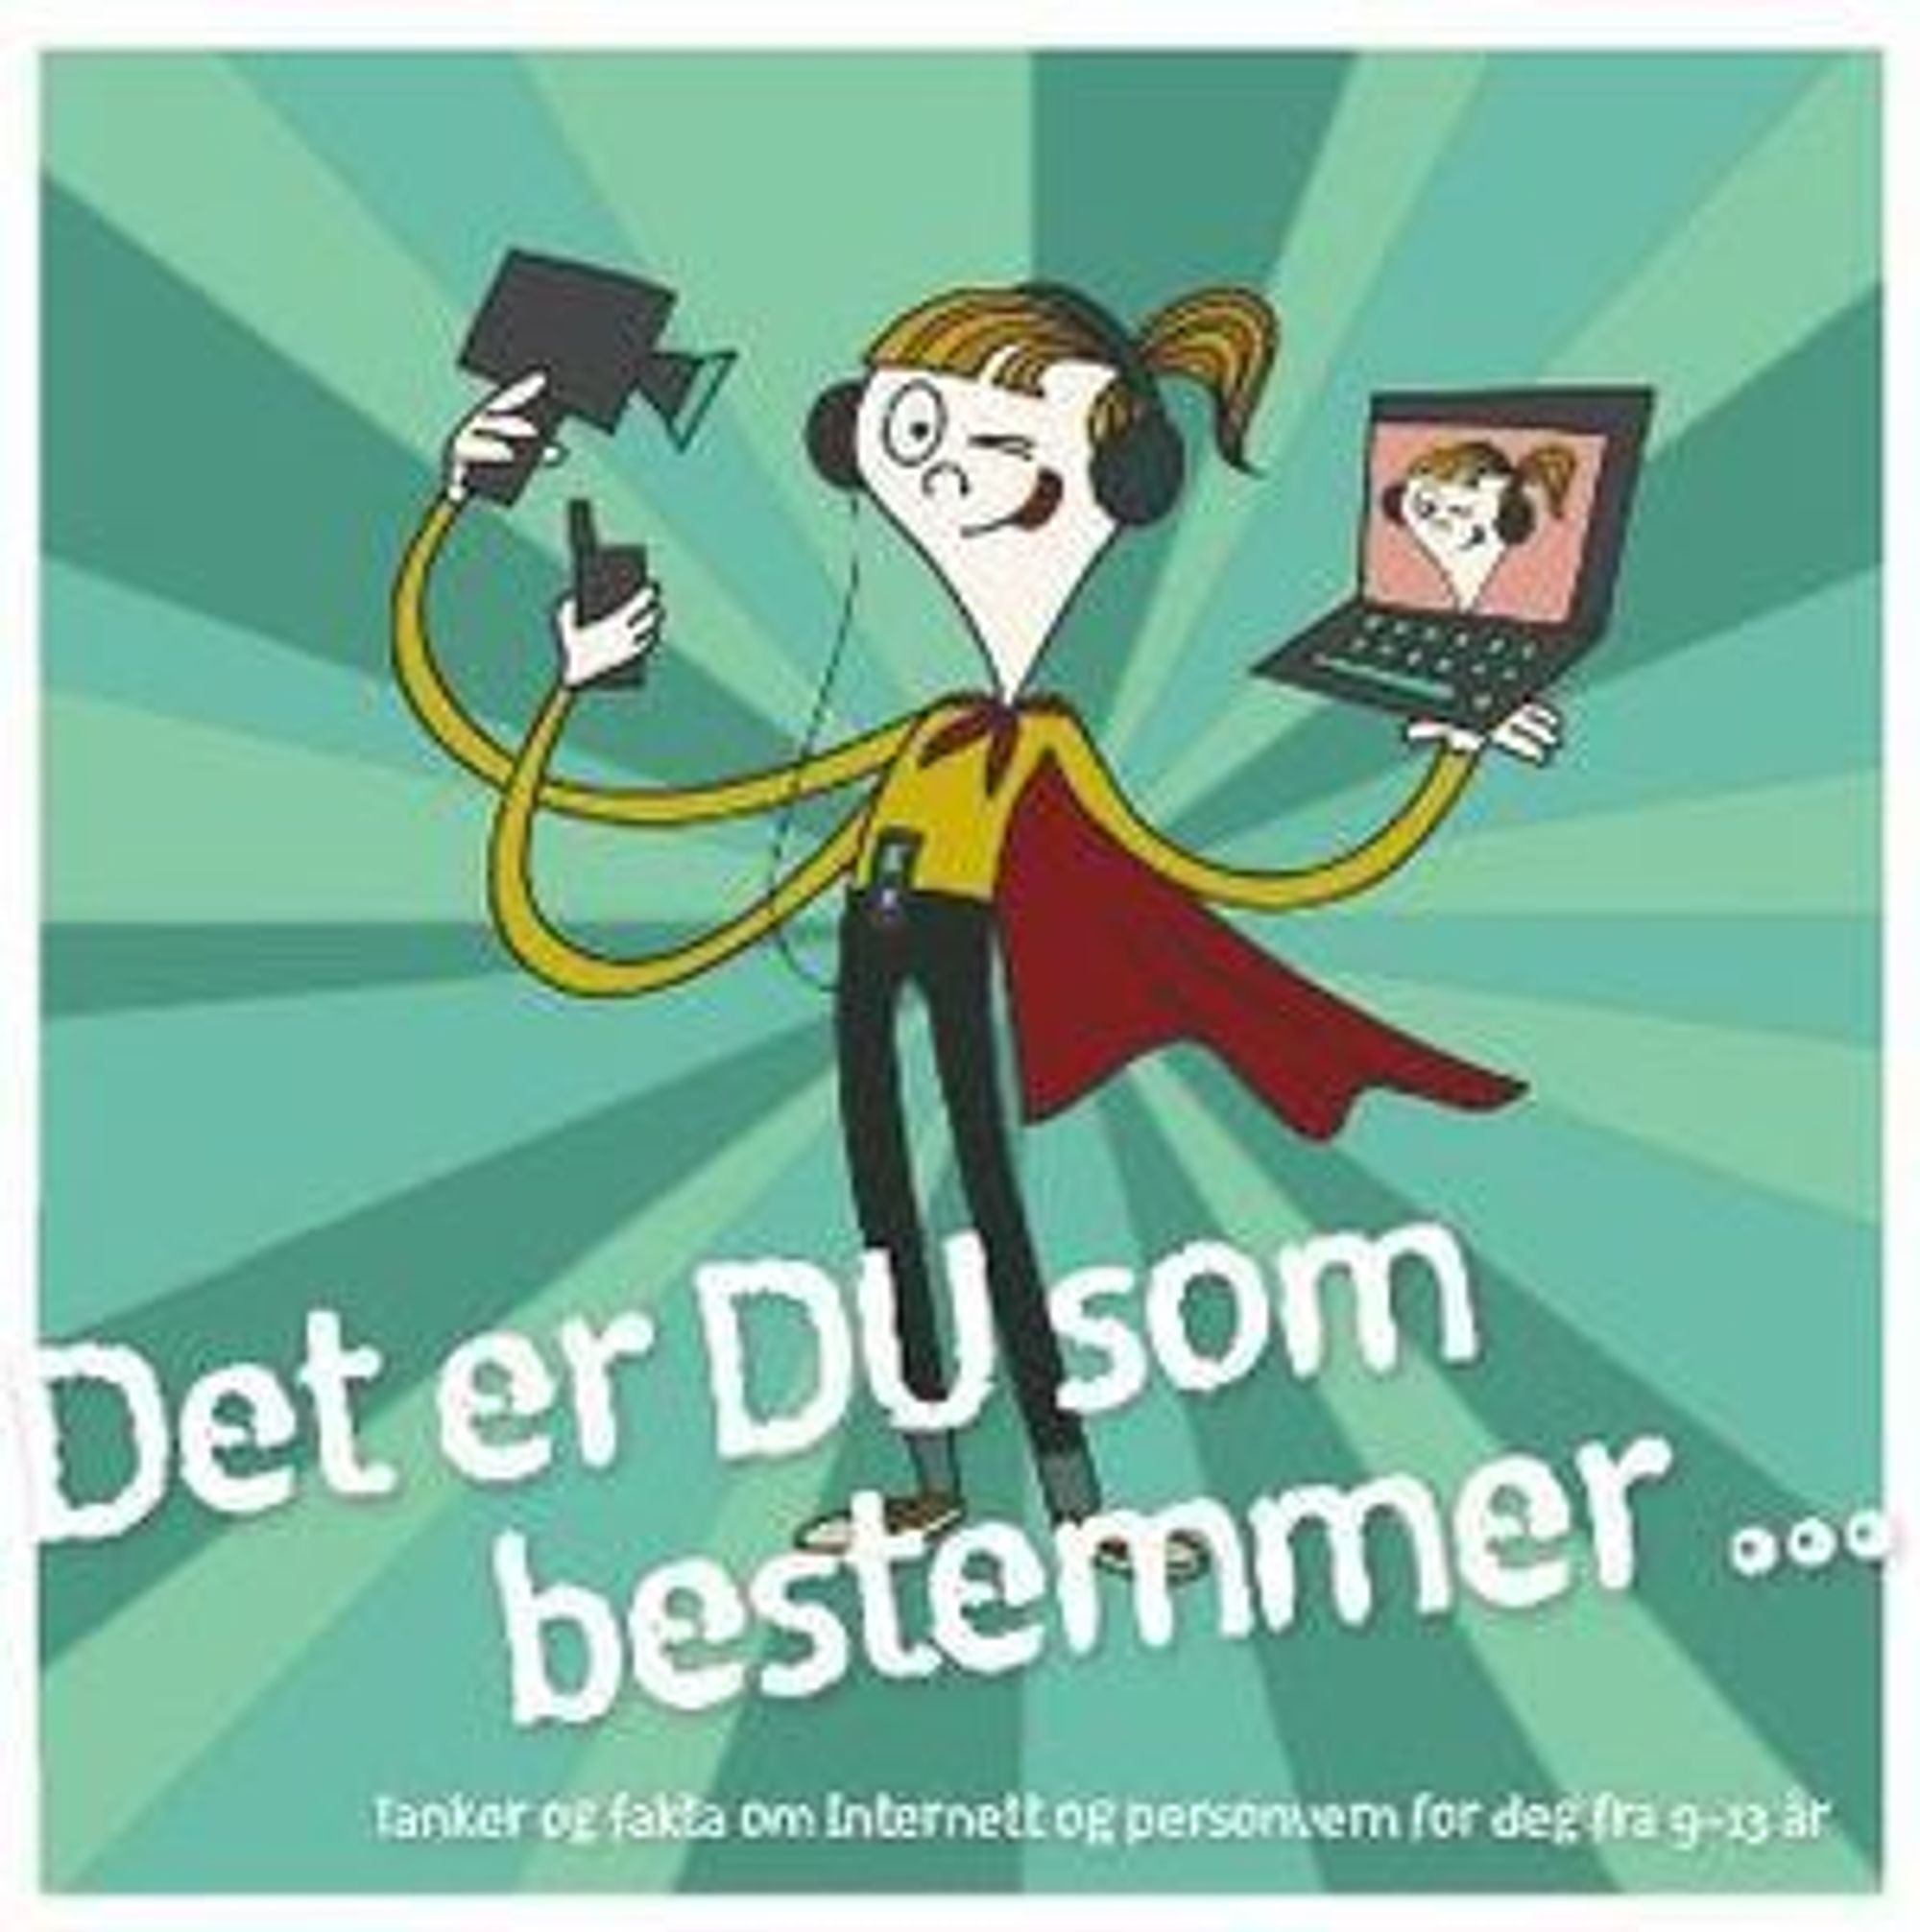 Dubestemmer.no er et felles prosjekt fra Datatilsynet, Teknologirådet og Senter for IKT i utdanning.